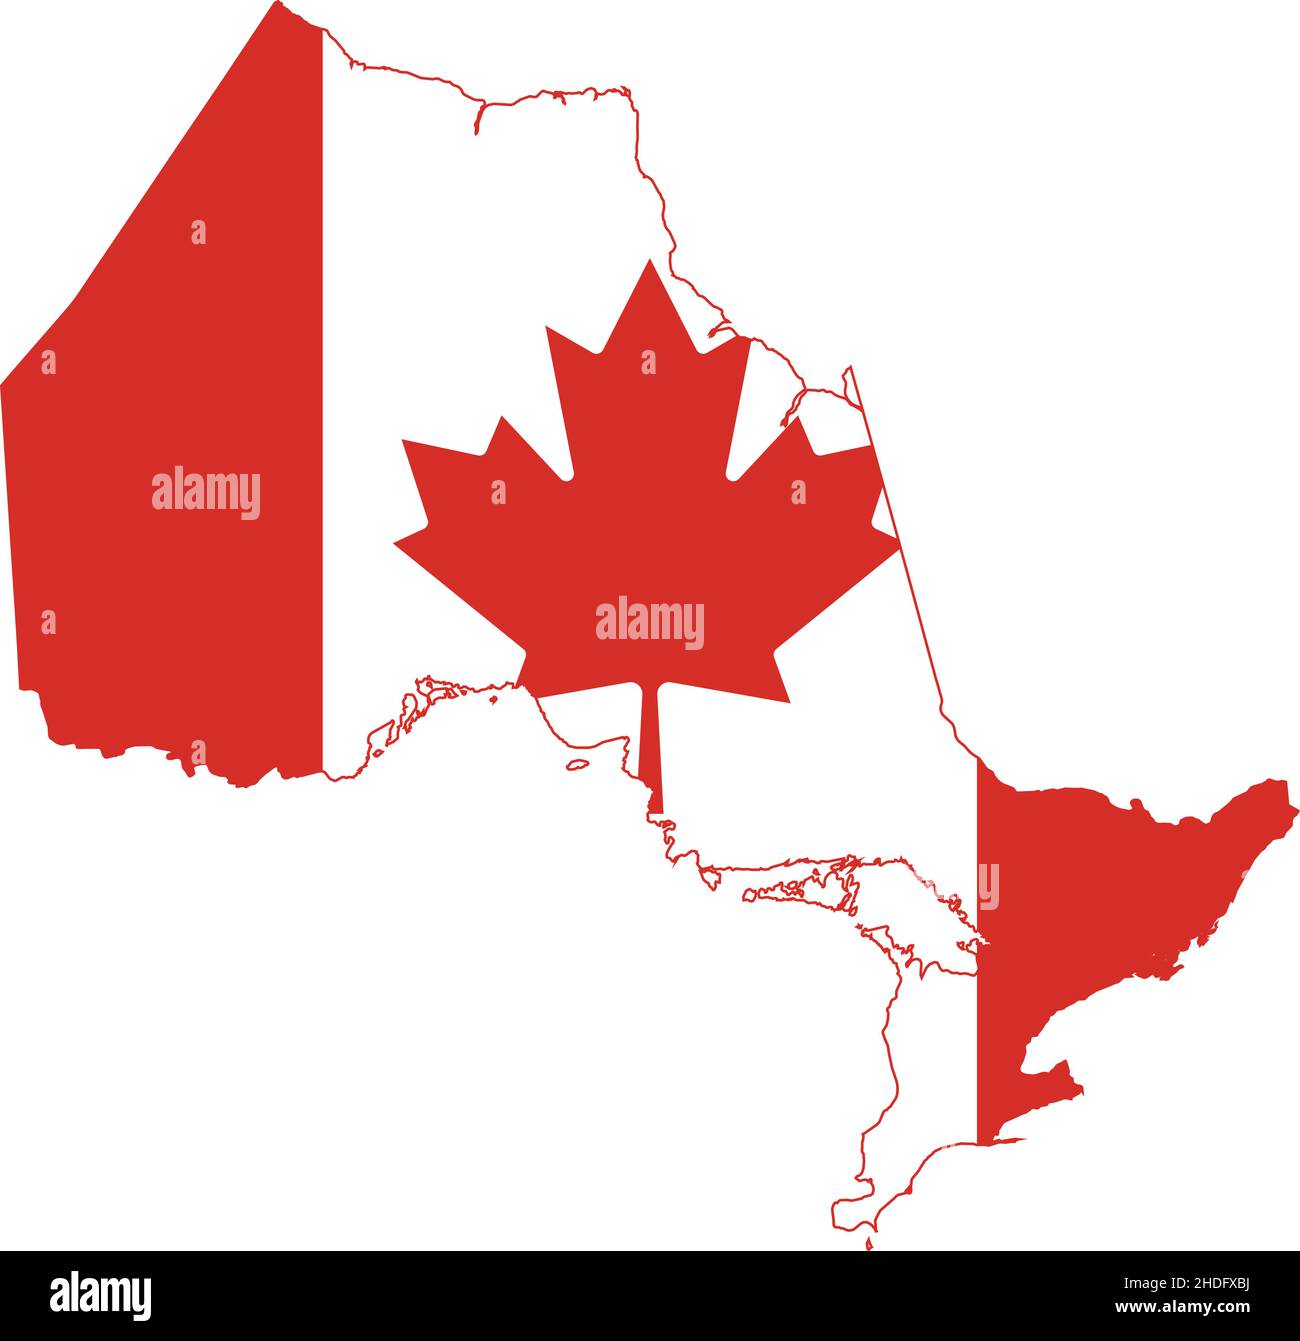 Flache Vektor-Verwaltungsflaggenkarte der kanadischen Provinz ONTARIO kombiniert mit der offiziellen Flagge KANADAS Stock Vektor